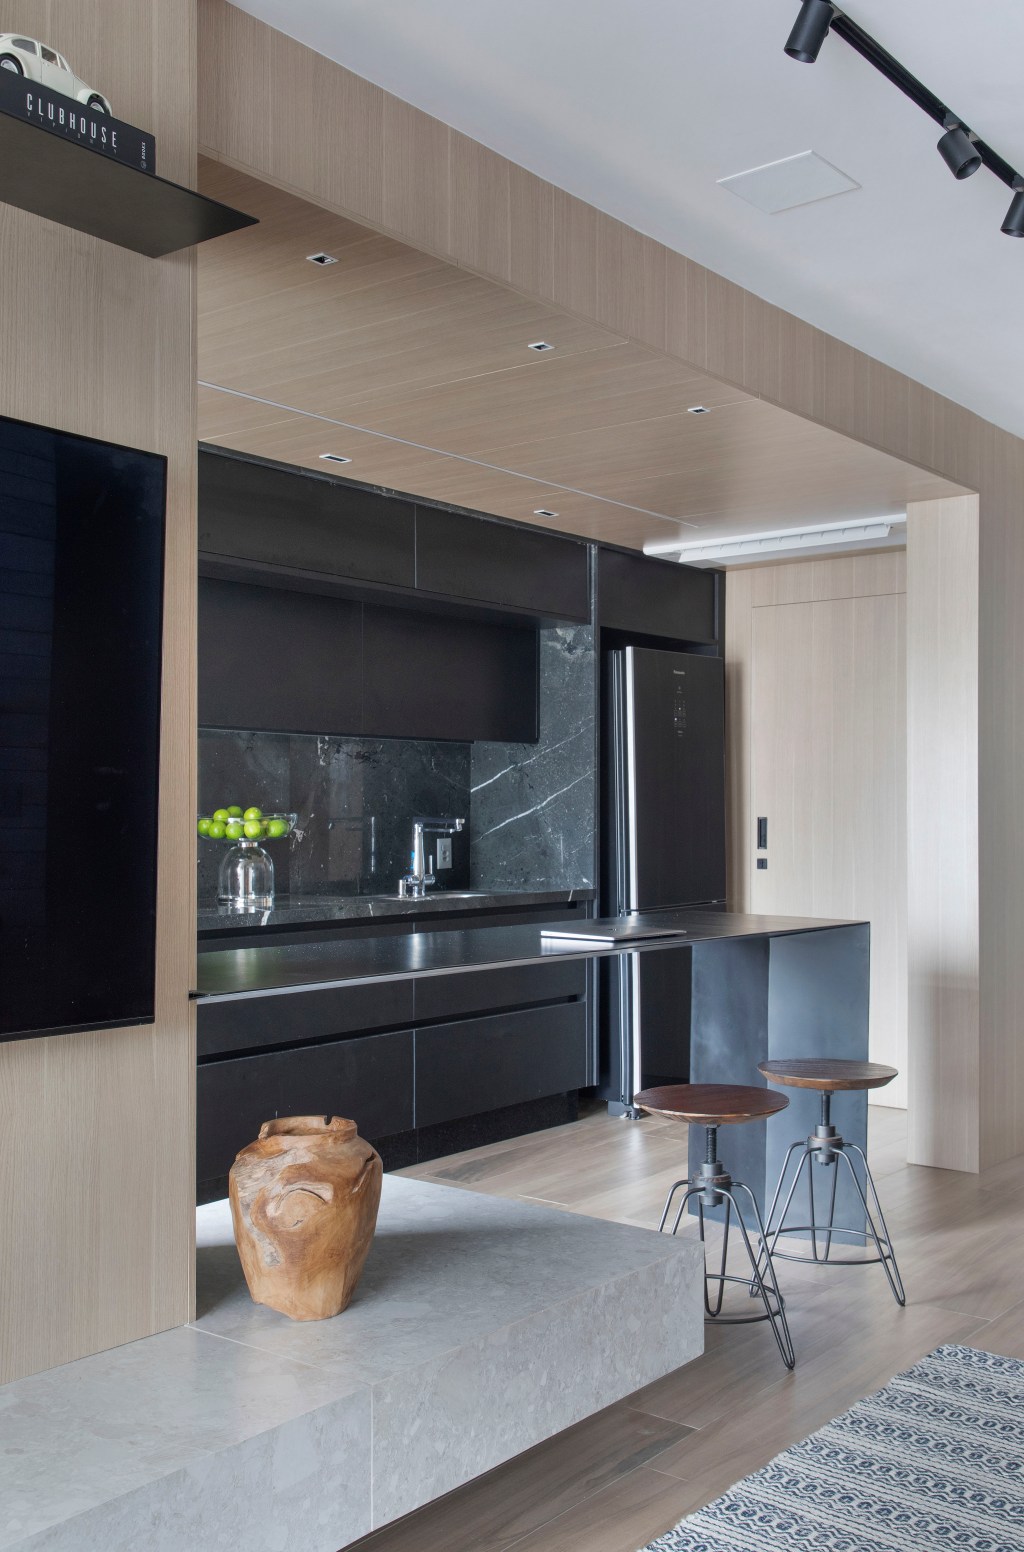 Preto e terracota marcam o décor deste apartamento masculino de 110 m². Projeto de Up3 Arquitetura. Na foto, cozinha integrada com marcenaria preta.